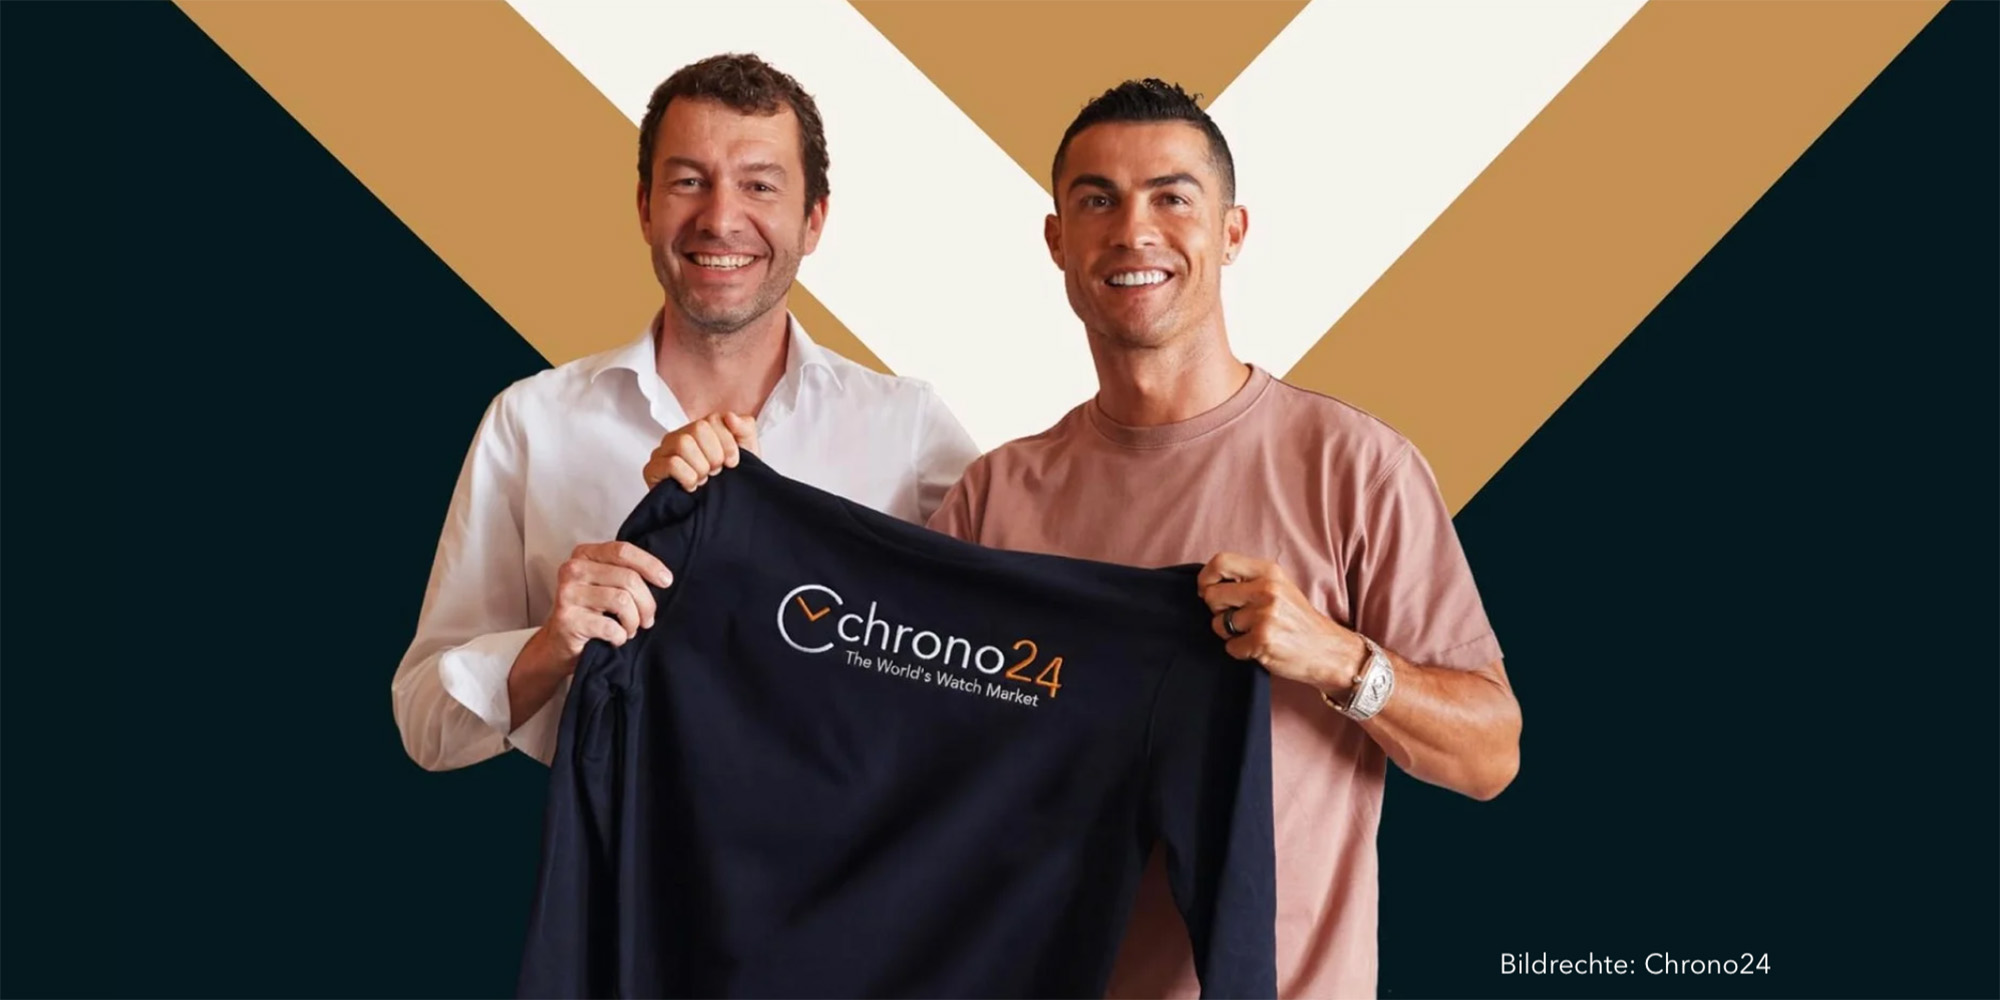 Cristiano Ronaldo beim führenden Online-Uhrenmarktplatz Chrono24